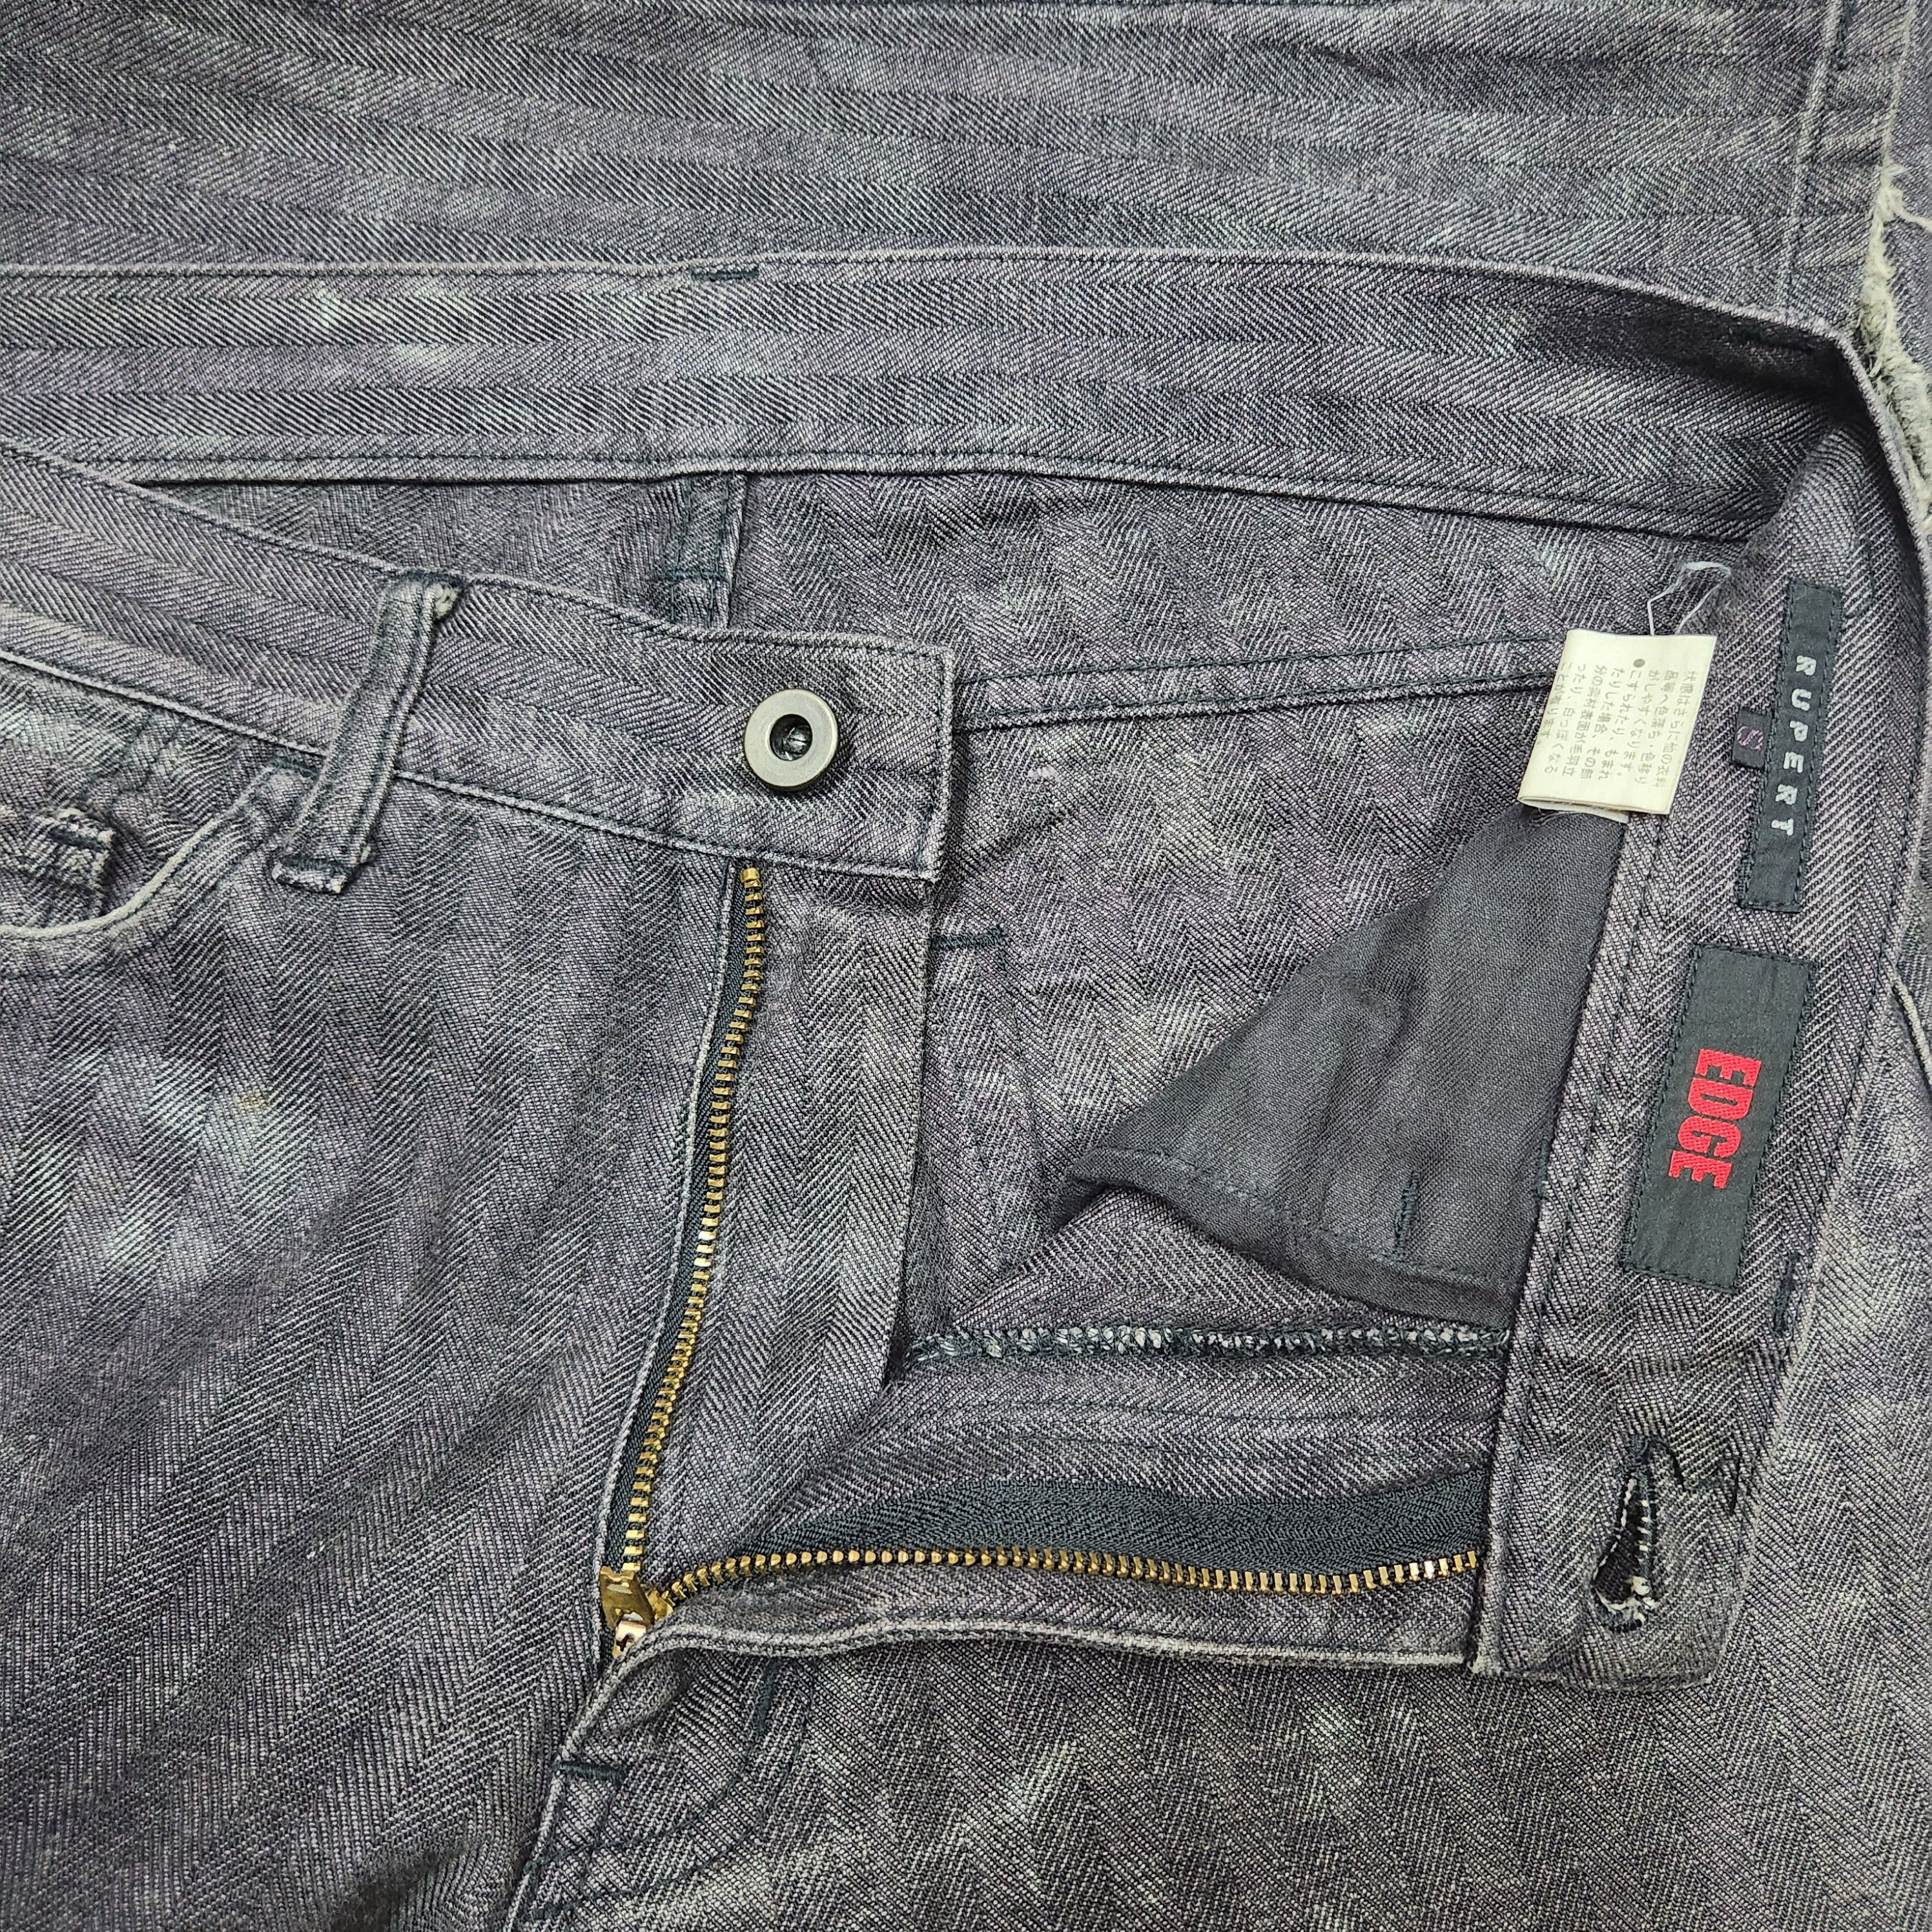 Japanese Brand - Flared Edge Rupert Denim Japan Jeans 70s Style - 15